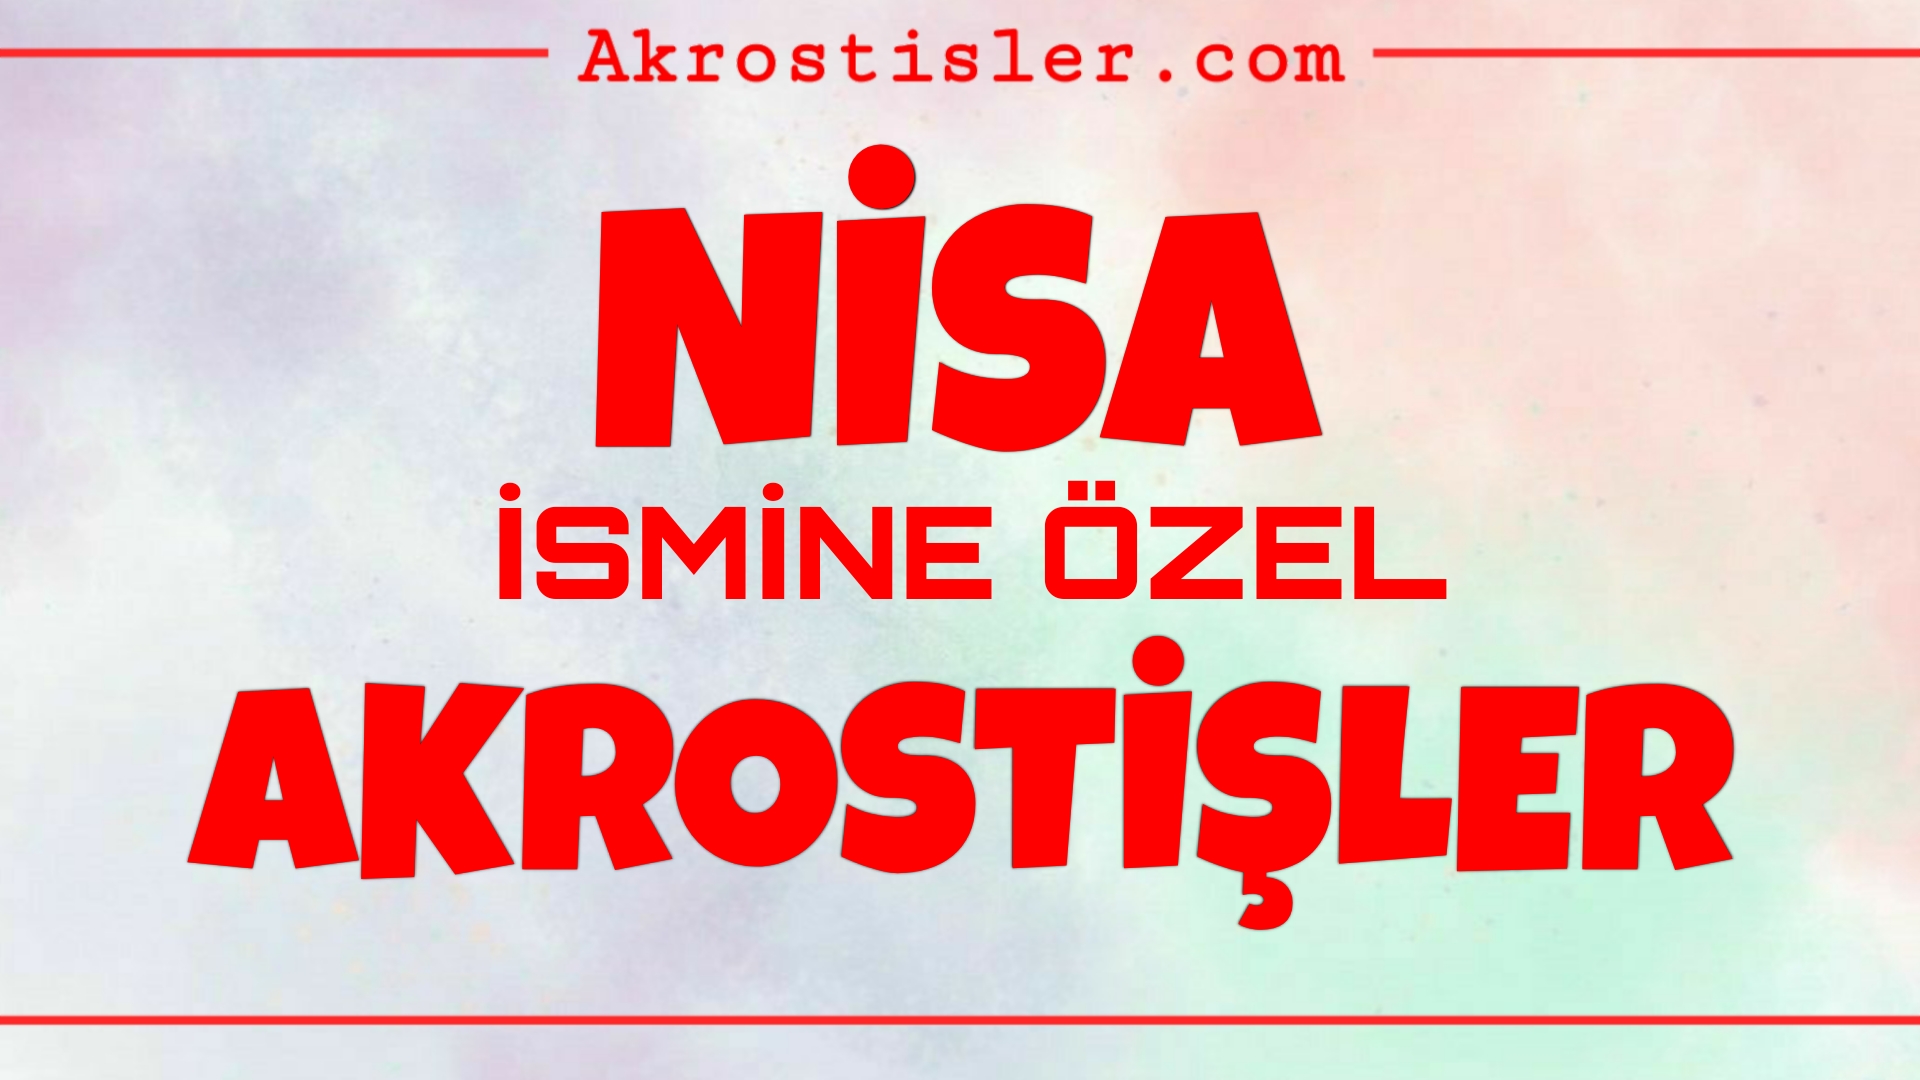 Bu görsel Nisa akrostiş, Nisa ile ilgili akrostiş, Nisa ismi ile ilgili akrostiş, Nisa ile akrostiş, akrostiş şiir Nisa, Nisa öğretmen akrostiş şiir konularını içermektedir.